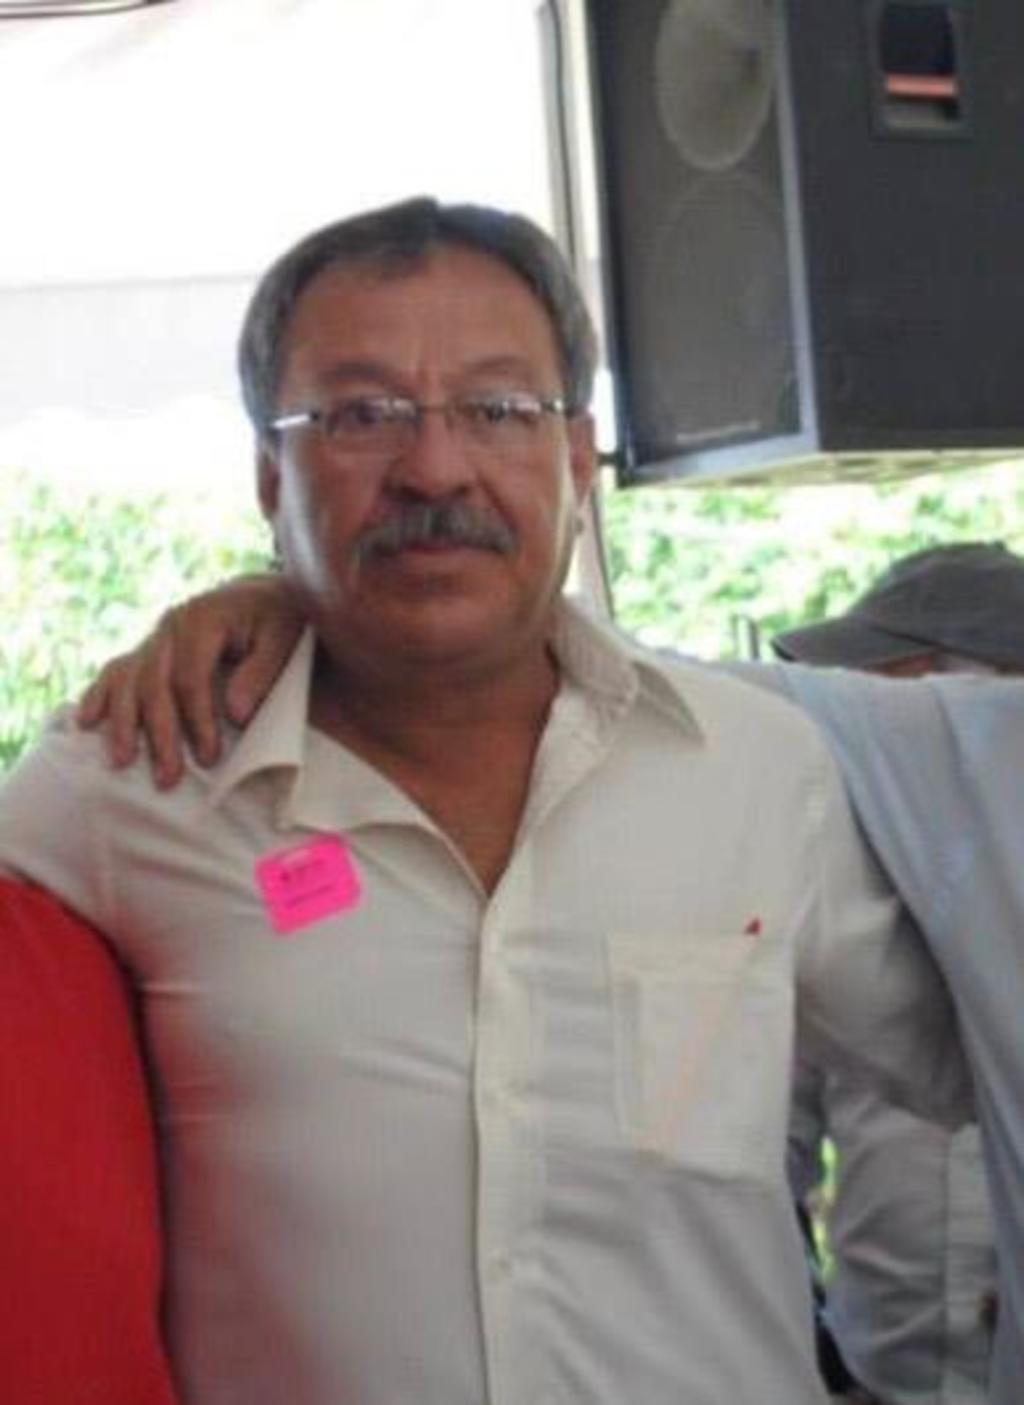 La Comisión Nacional de los Derechos Humanos (CNDH) de México pidió este martes a las autoridades del país una 'investigación exhaustiva' sobre el asesinato del ambientalista y defensor de los derechos humanos Isaac Medardo para que el crimen no quede impune. (ARCHIVO)